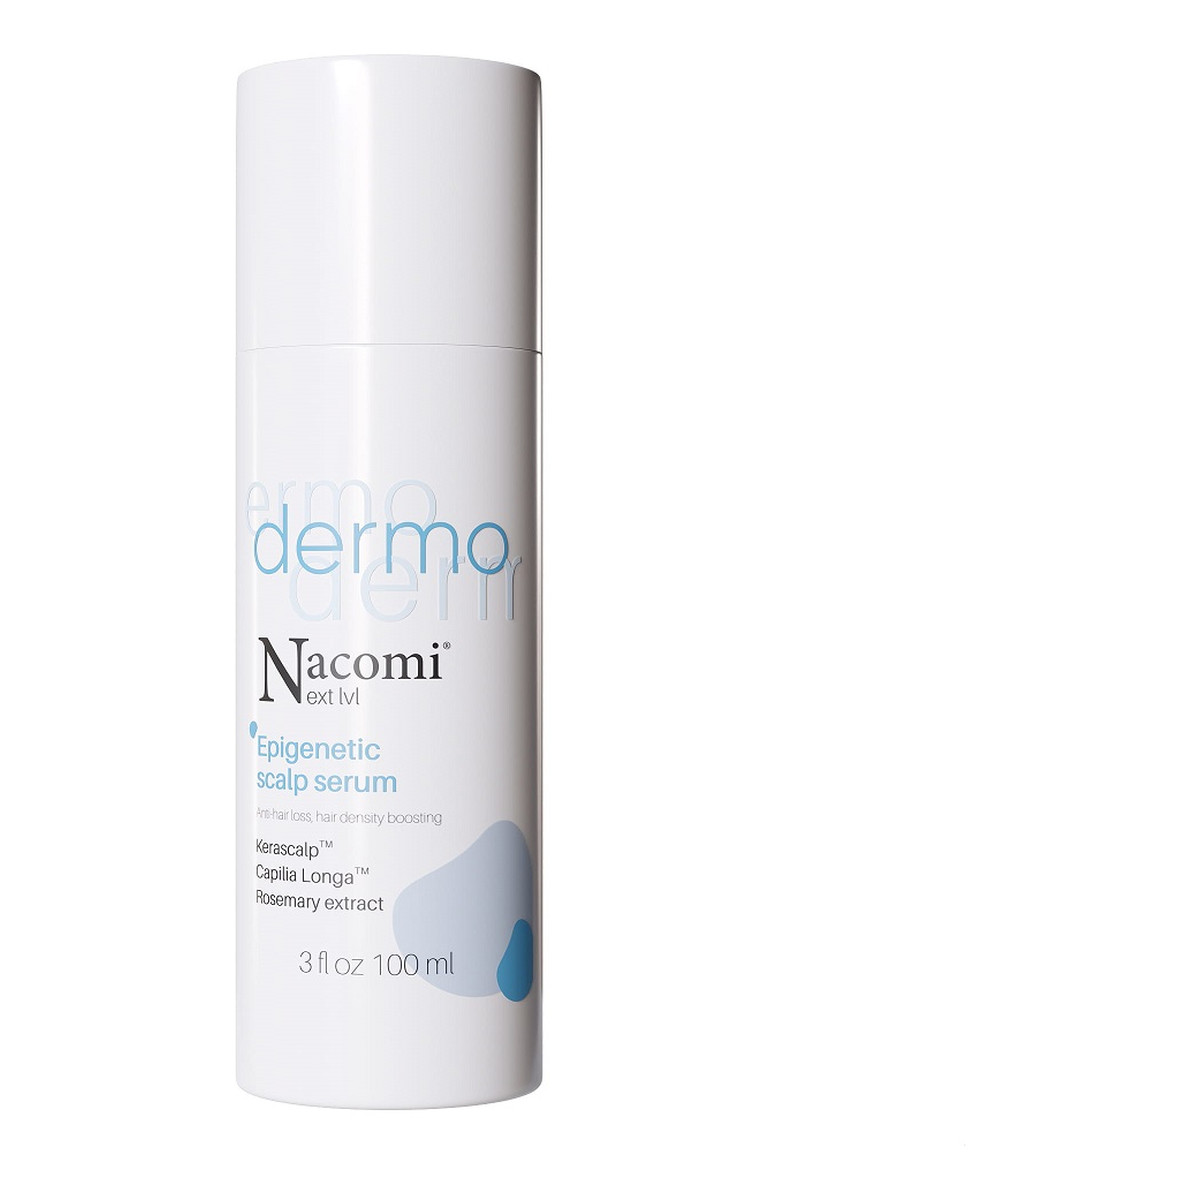 Nacomi Next level Dermo epigenetyczne serum do skóry głowy zapobiegające wypadaniu włosów i zagęszczające 100ml